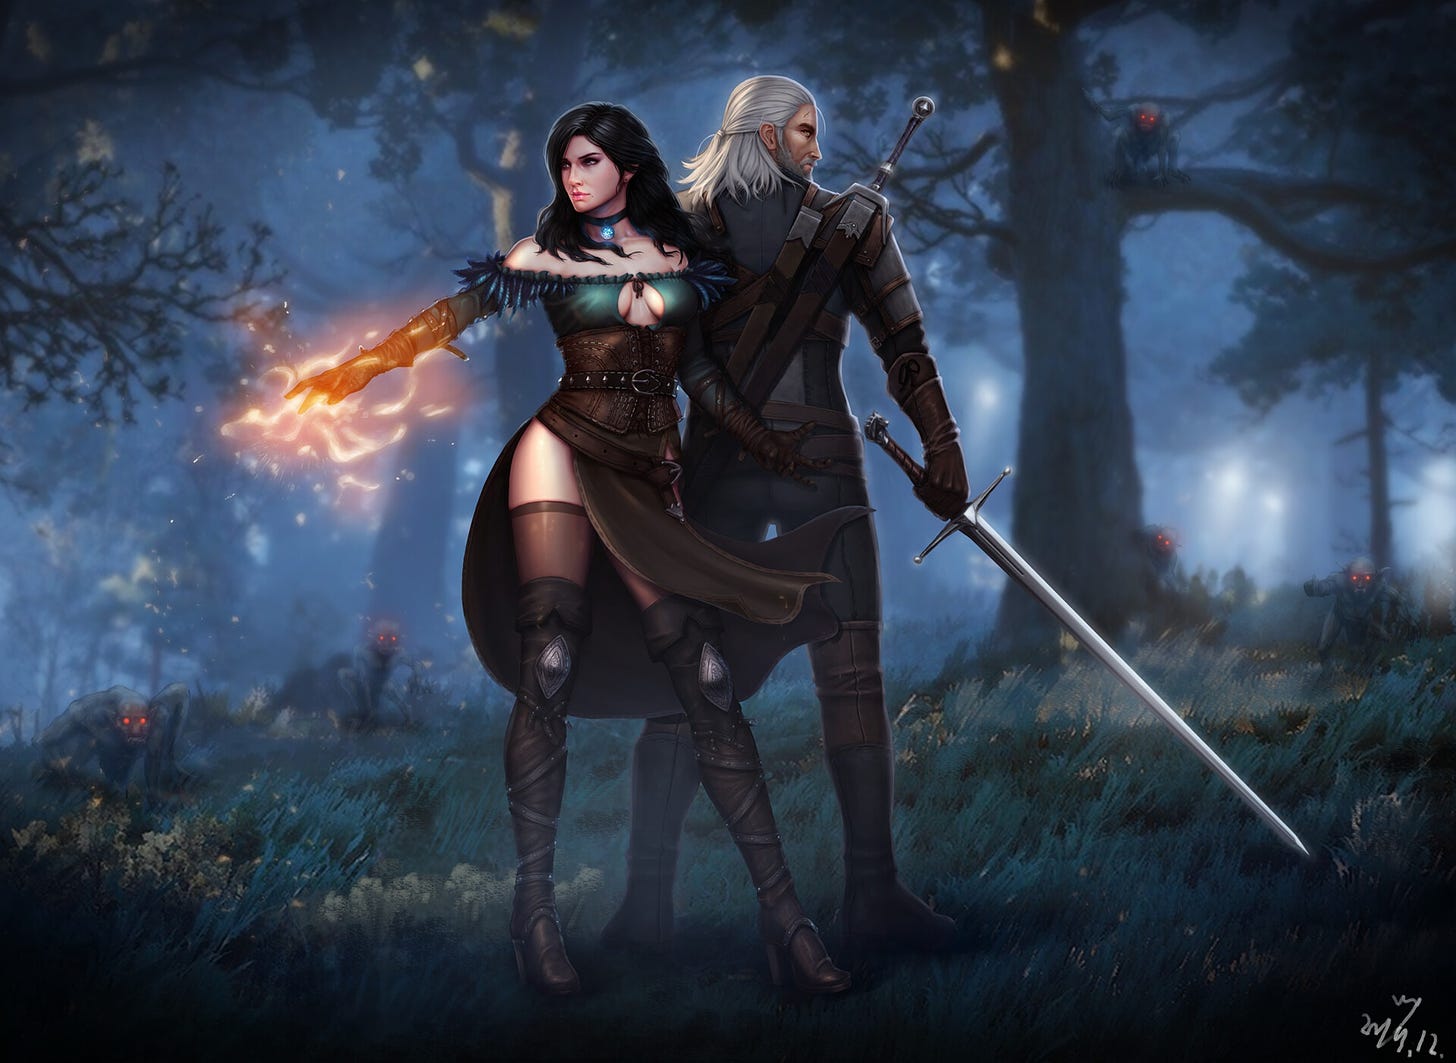 A swordsman and a sorceress